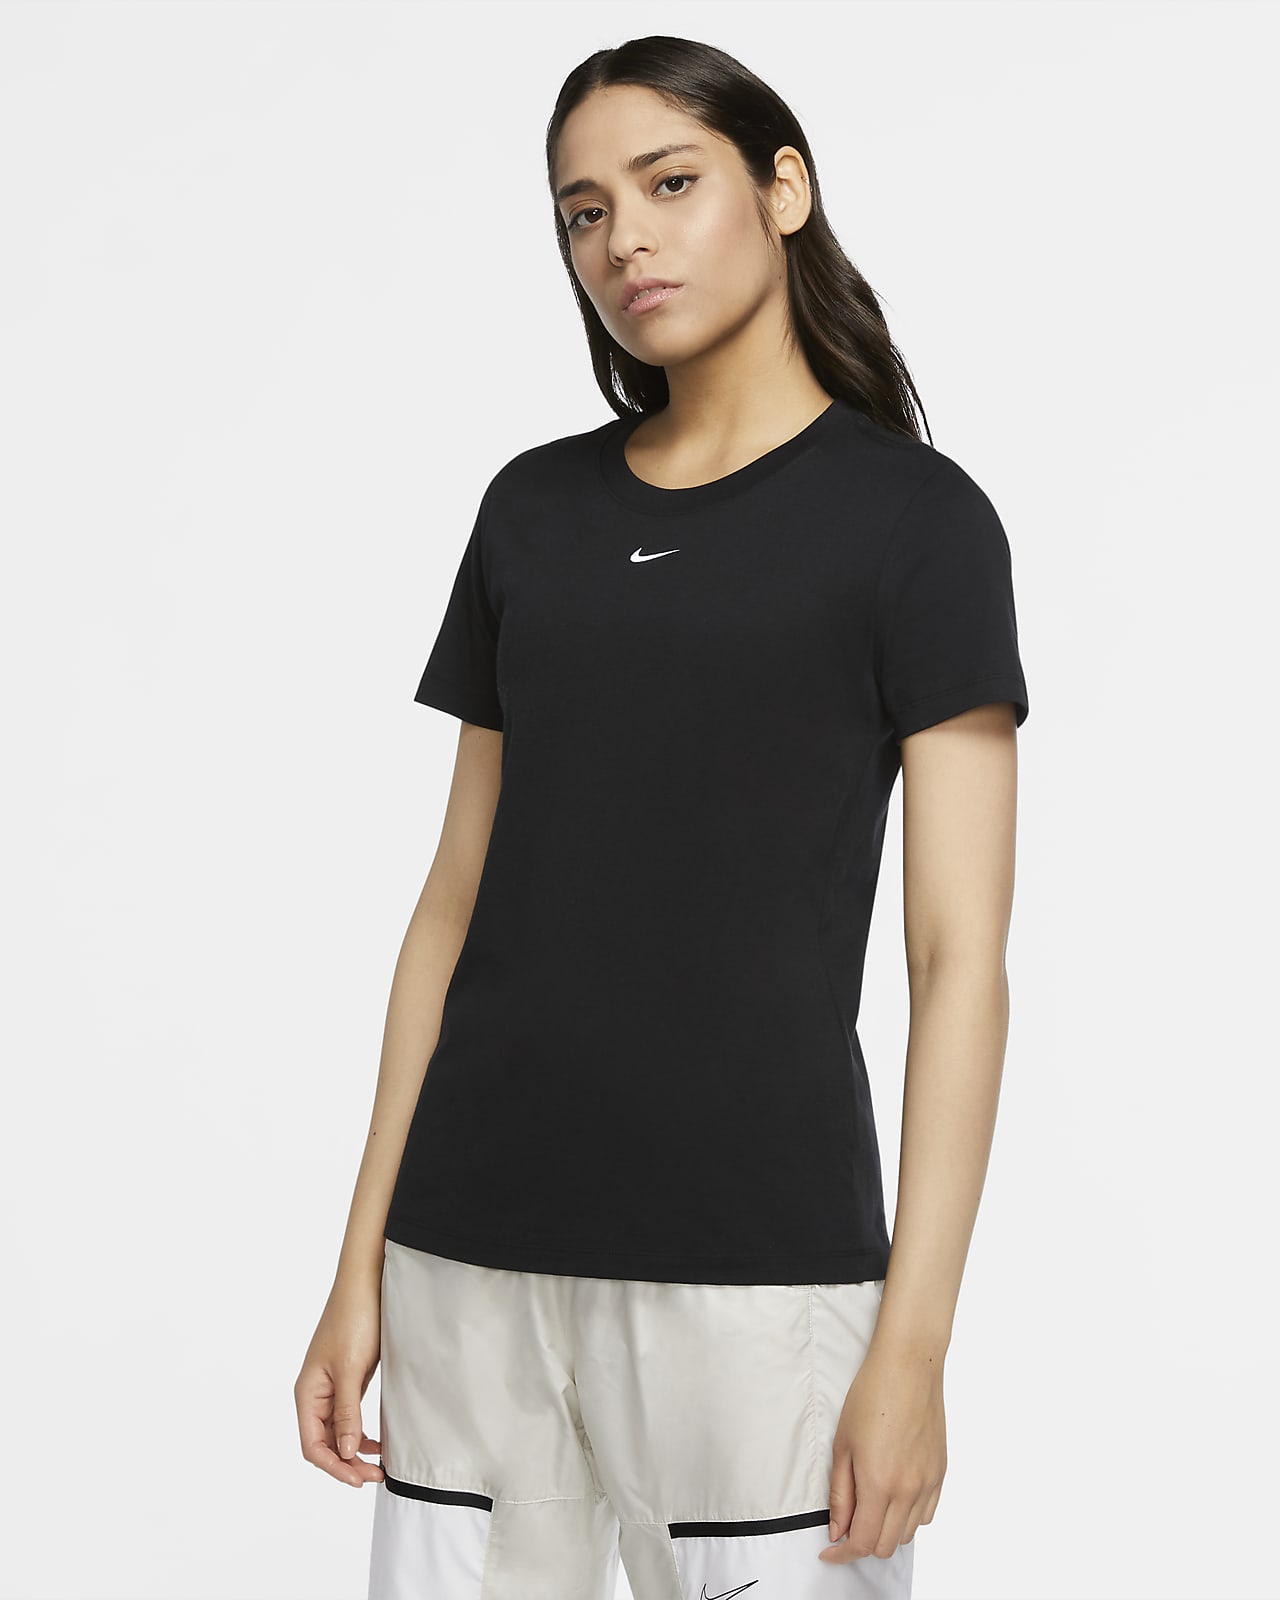 T-shirt Nike Sportswear - Donna